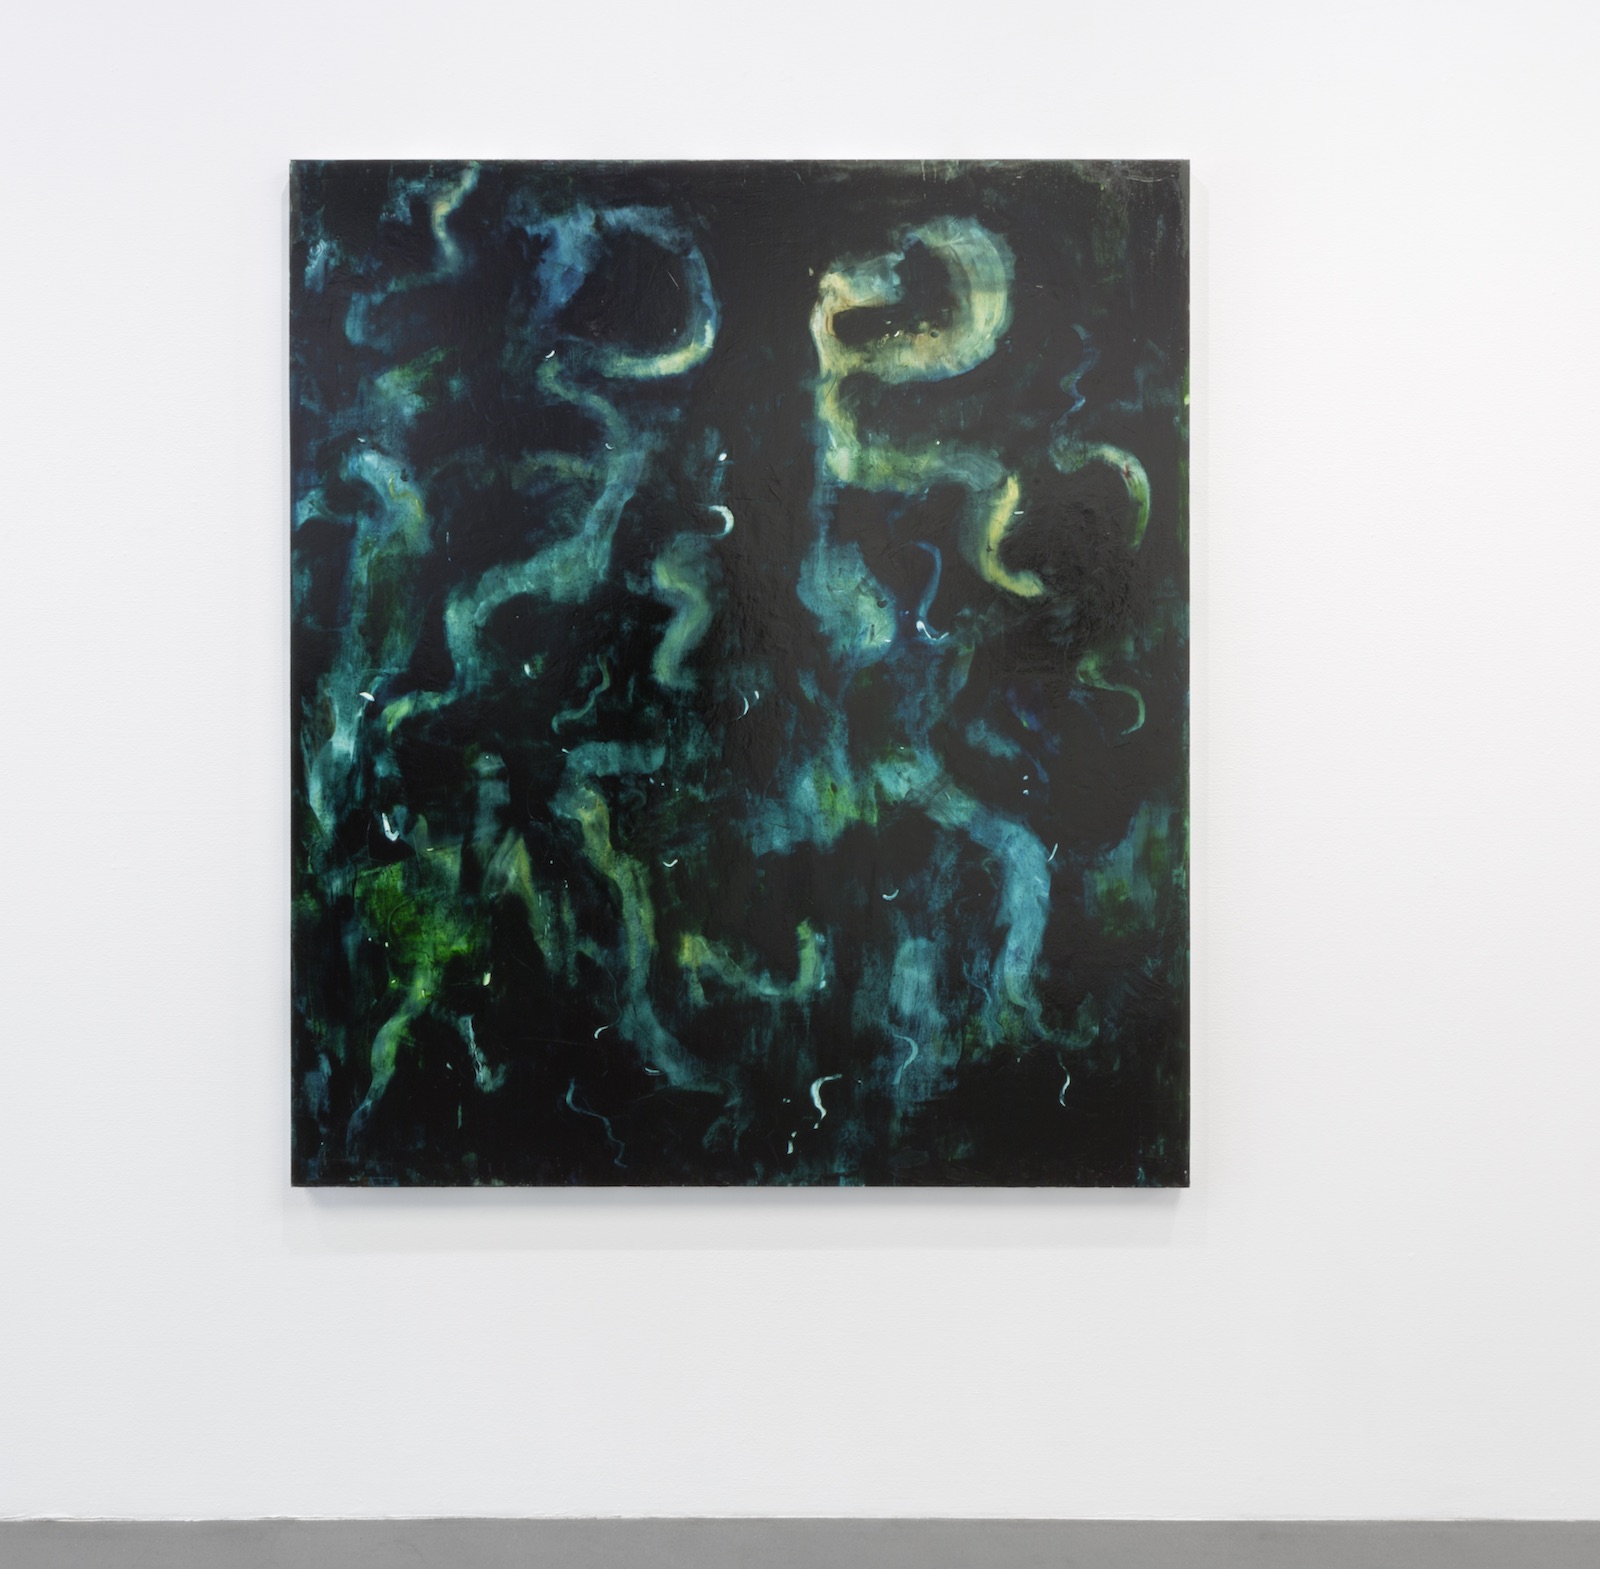 Run, 2017, oil on canvas, 160 x 140 cm
